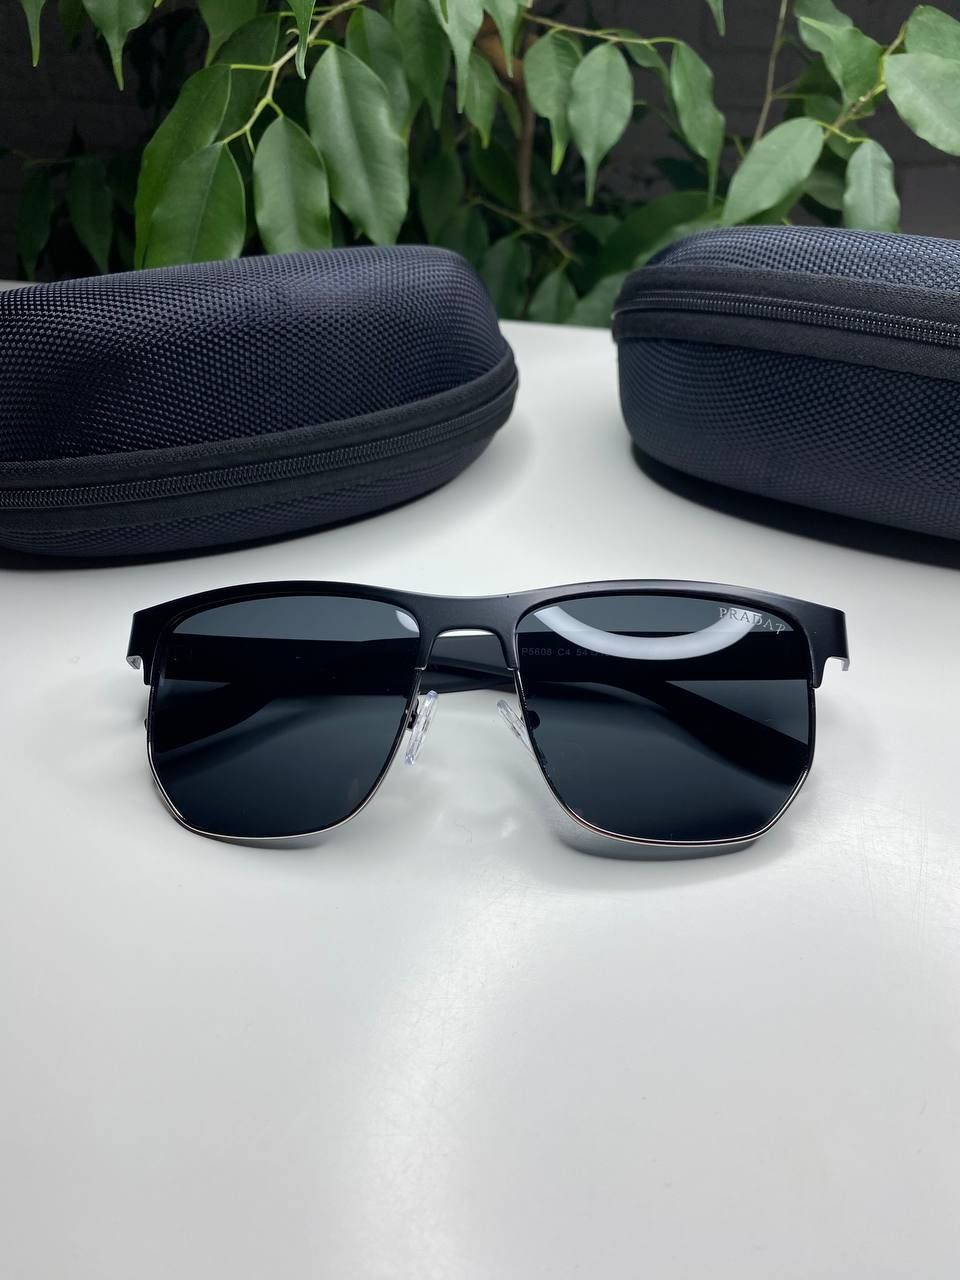 Мужские солнцезащитные очки Prada черные матовые Polarized антиблик